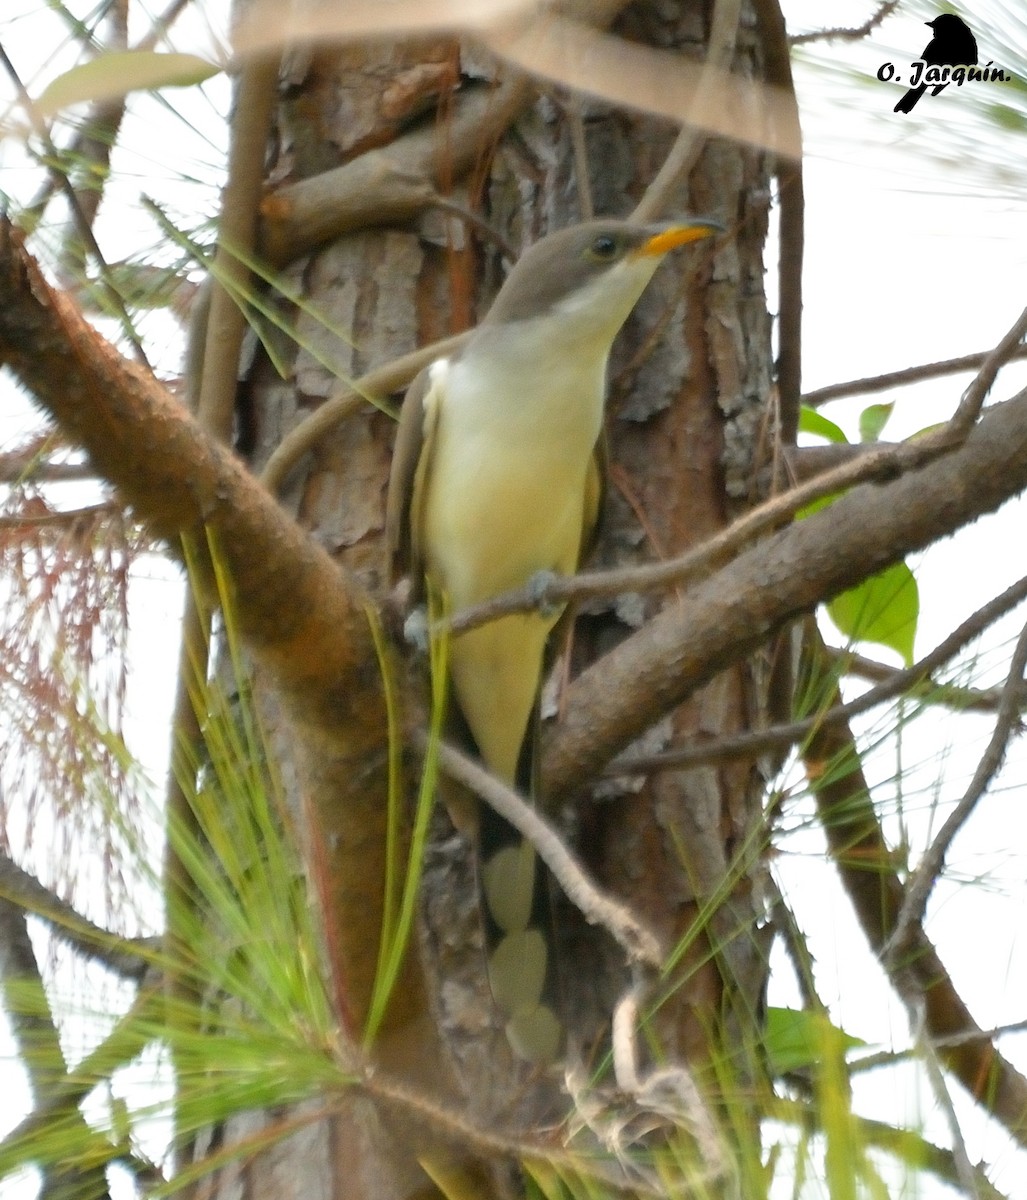 Yellow-billed Cuckoo - Orlando Jarquín